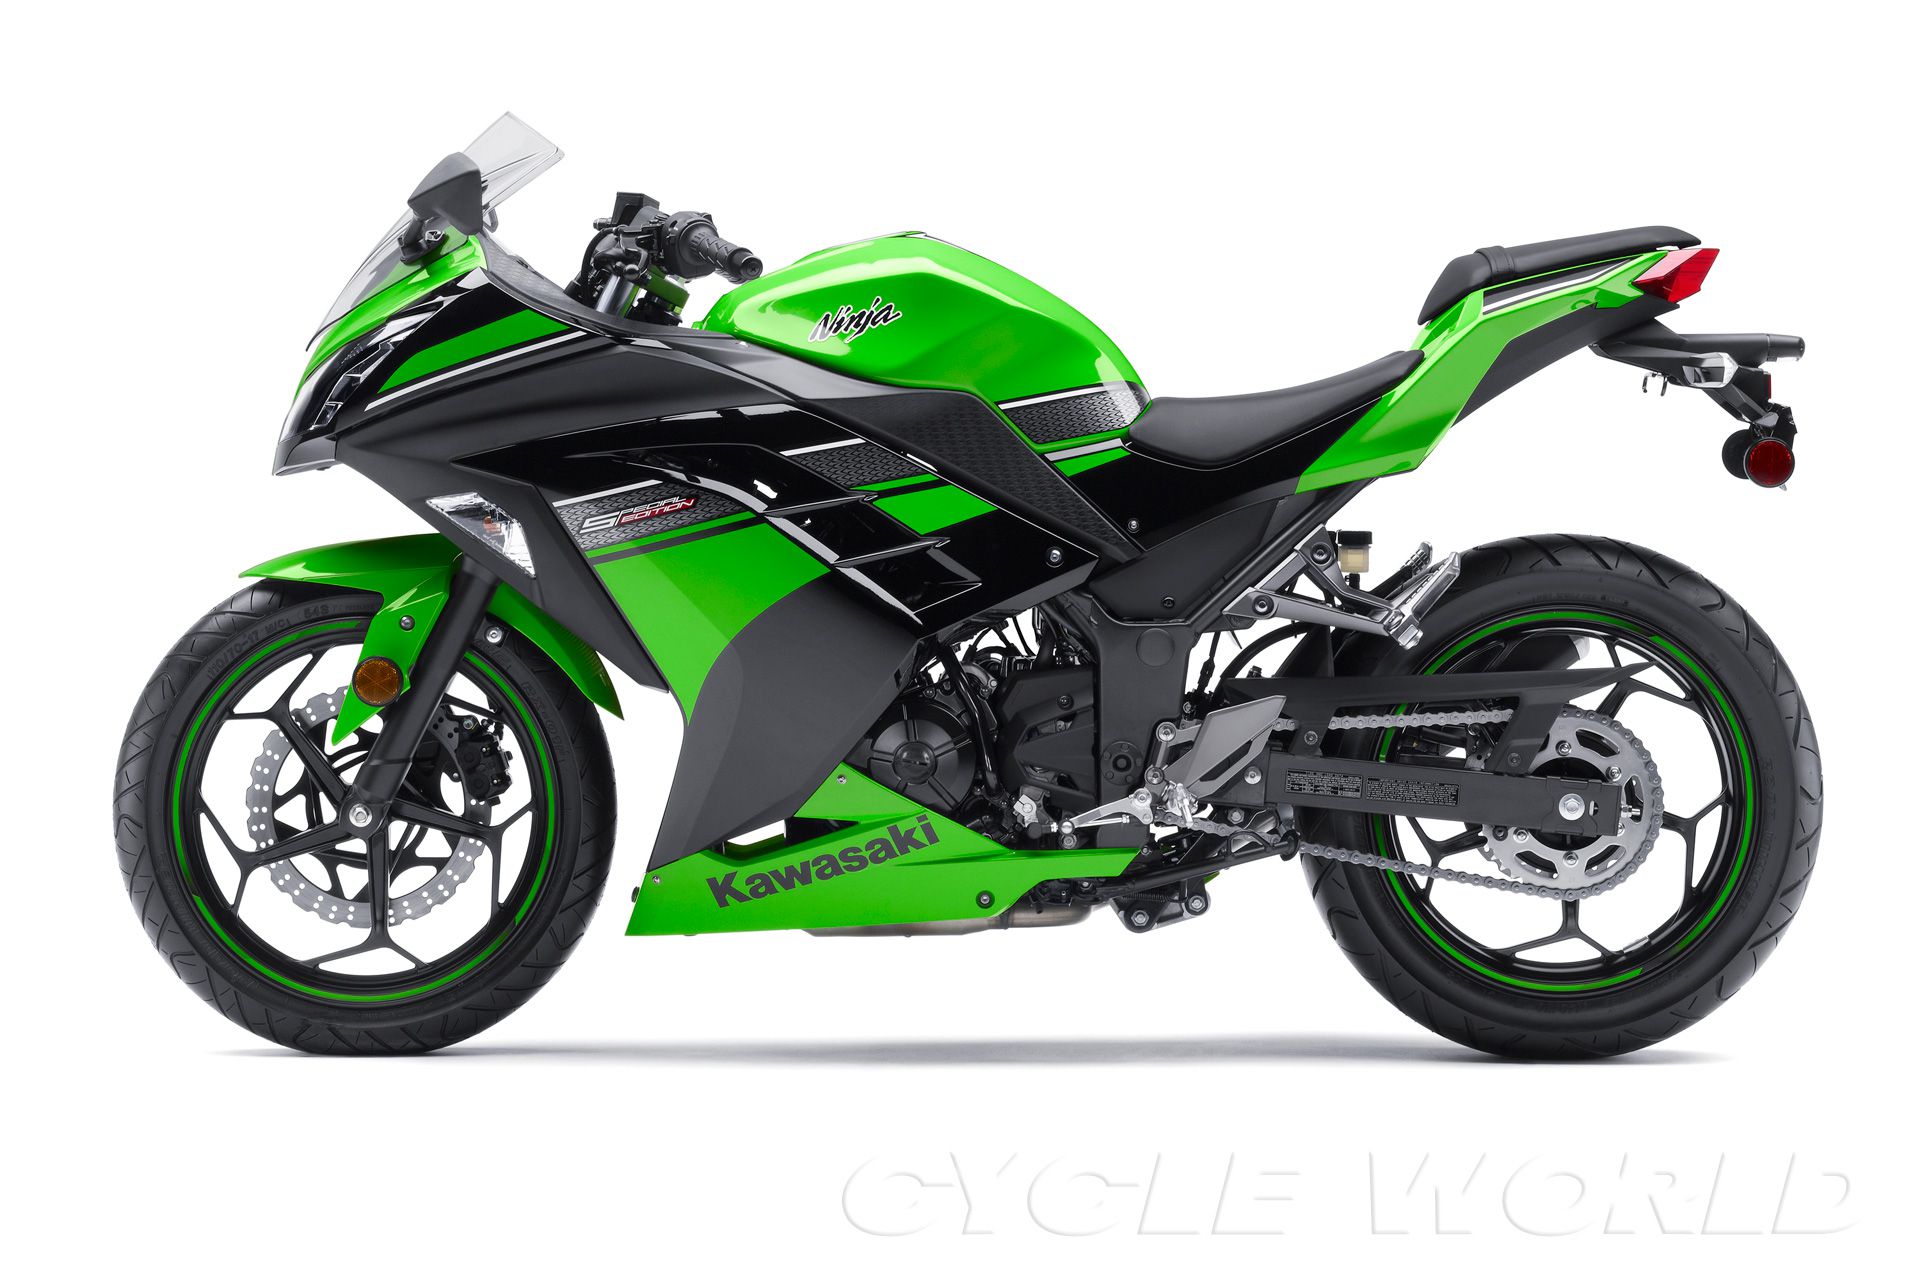 Kawasaki Ninja 300- First Look Review- Cycle